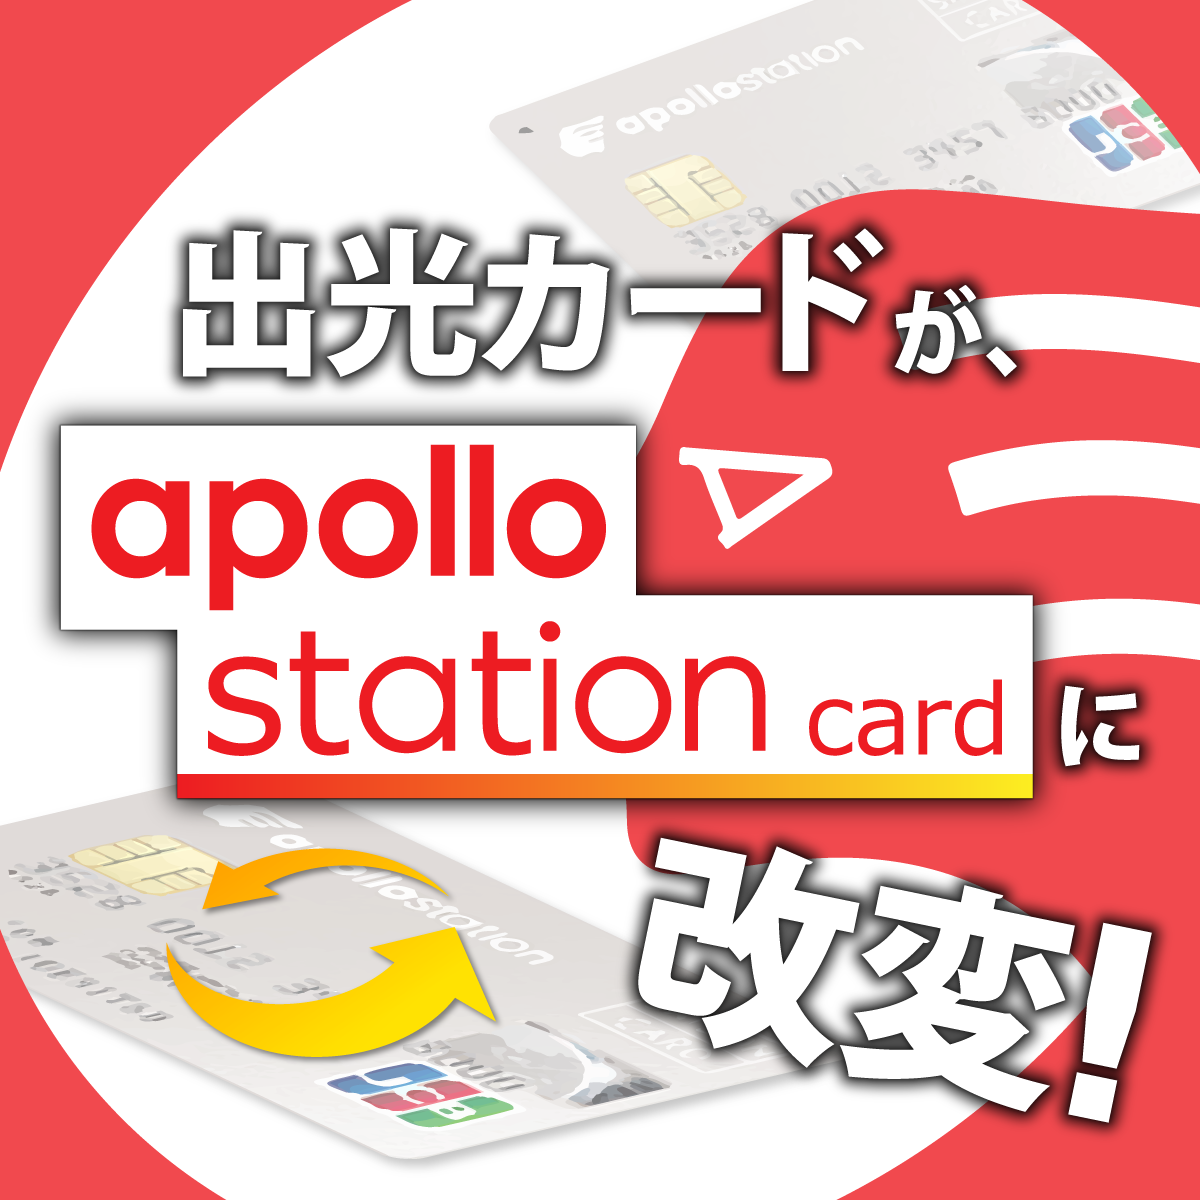 出光カードがapollostation cardに改変 イメージ画像